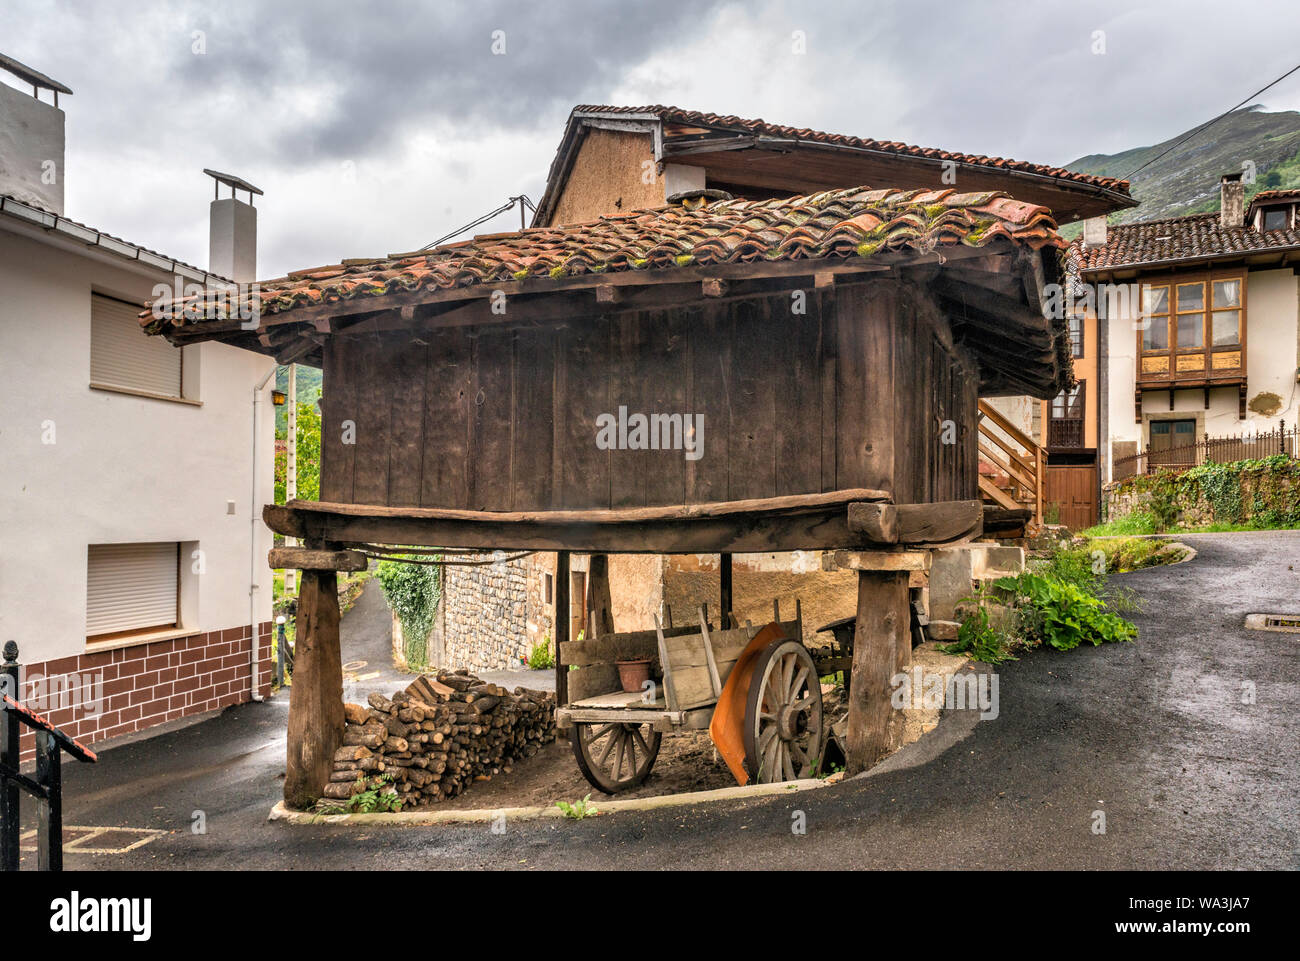 Horreo, sollevata tradizionale granaio, nel villaggio di San Juan de Beleno, ponga parco naturale, Asturias, Spagna Foto Stock